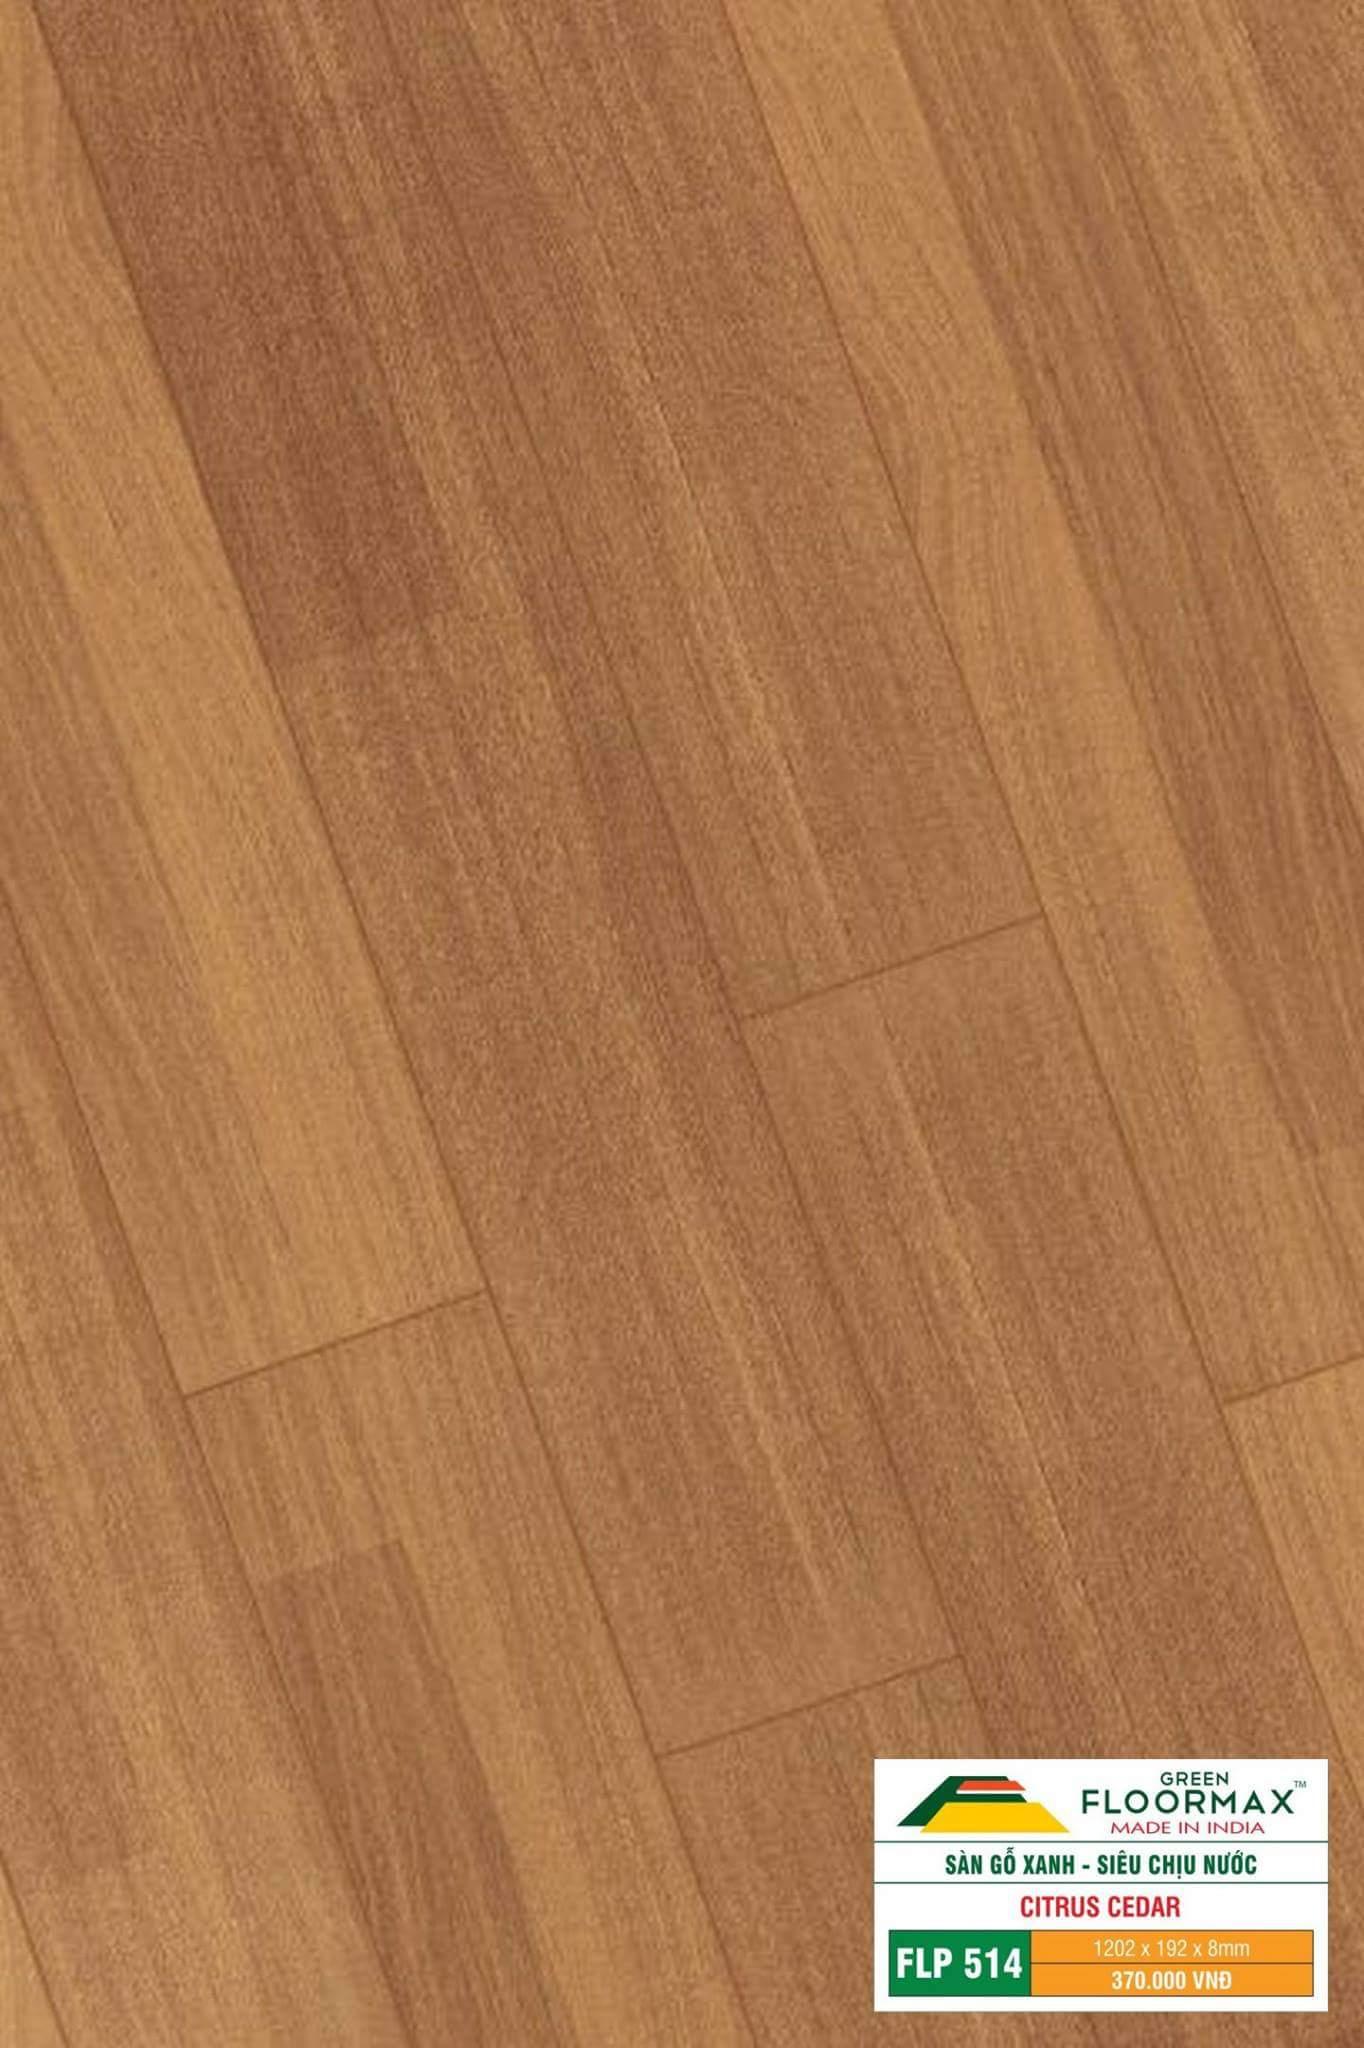 Sàn gỗ Ấn Độ FLP 514 